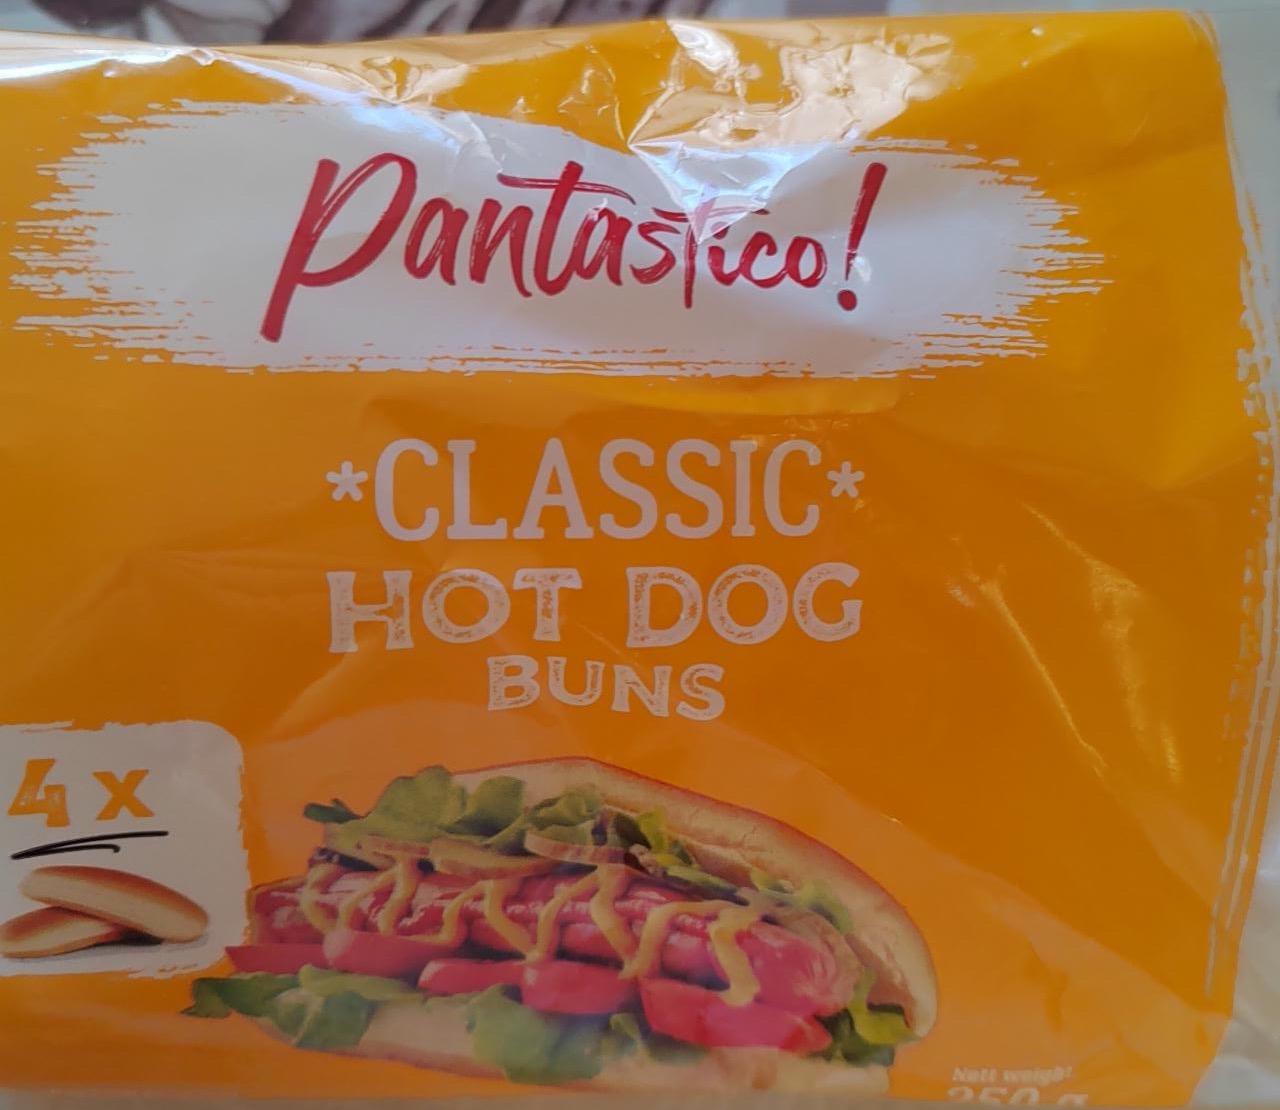 Képek - Classic hot dog buns Pantastico!